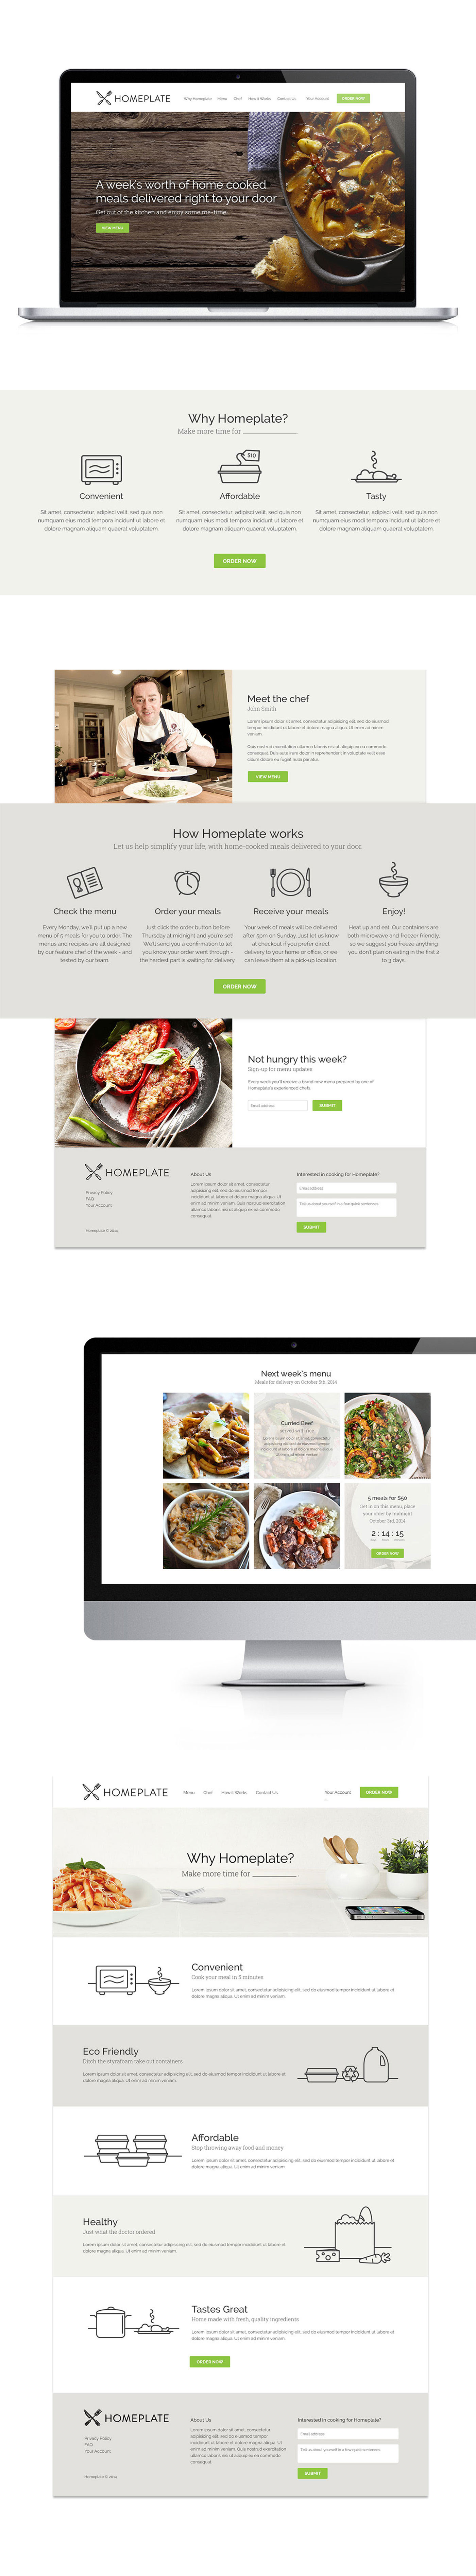 Website food service Startup delivery meals